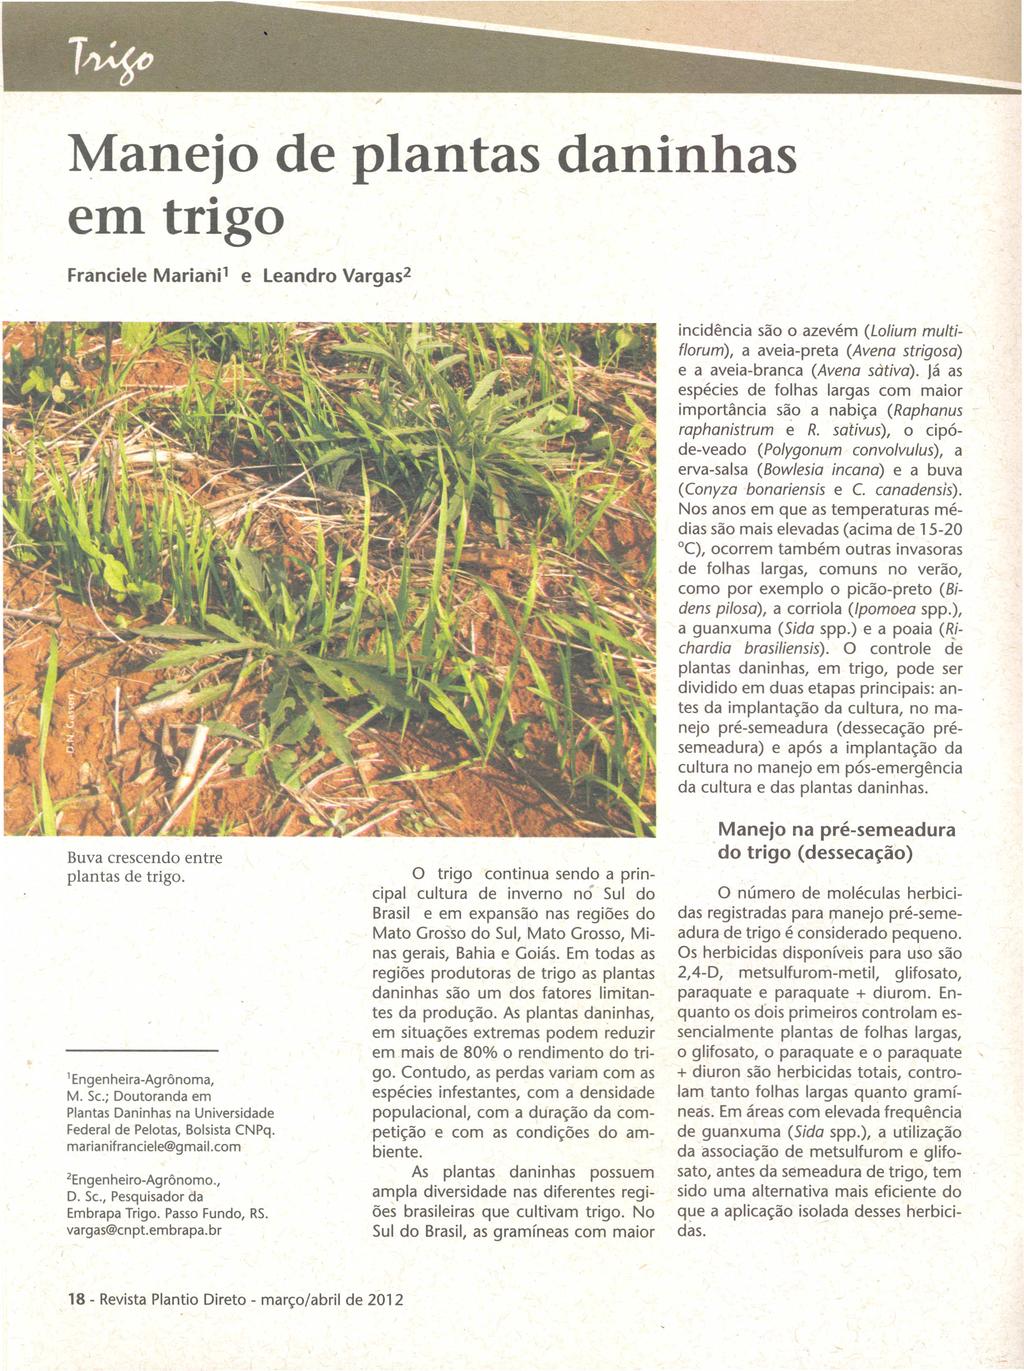 Manejo de plantas daninhas em trigo incidência são o azevém (Lolium multif1orum), a aveia-preta (Avena strigosa) e a aveia-branca (Avena sàtiva).